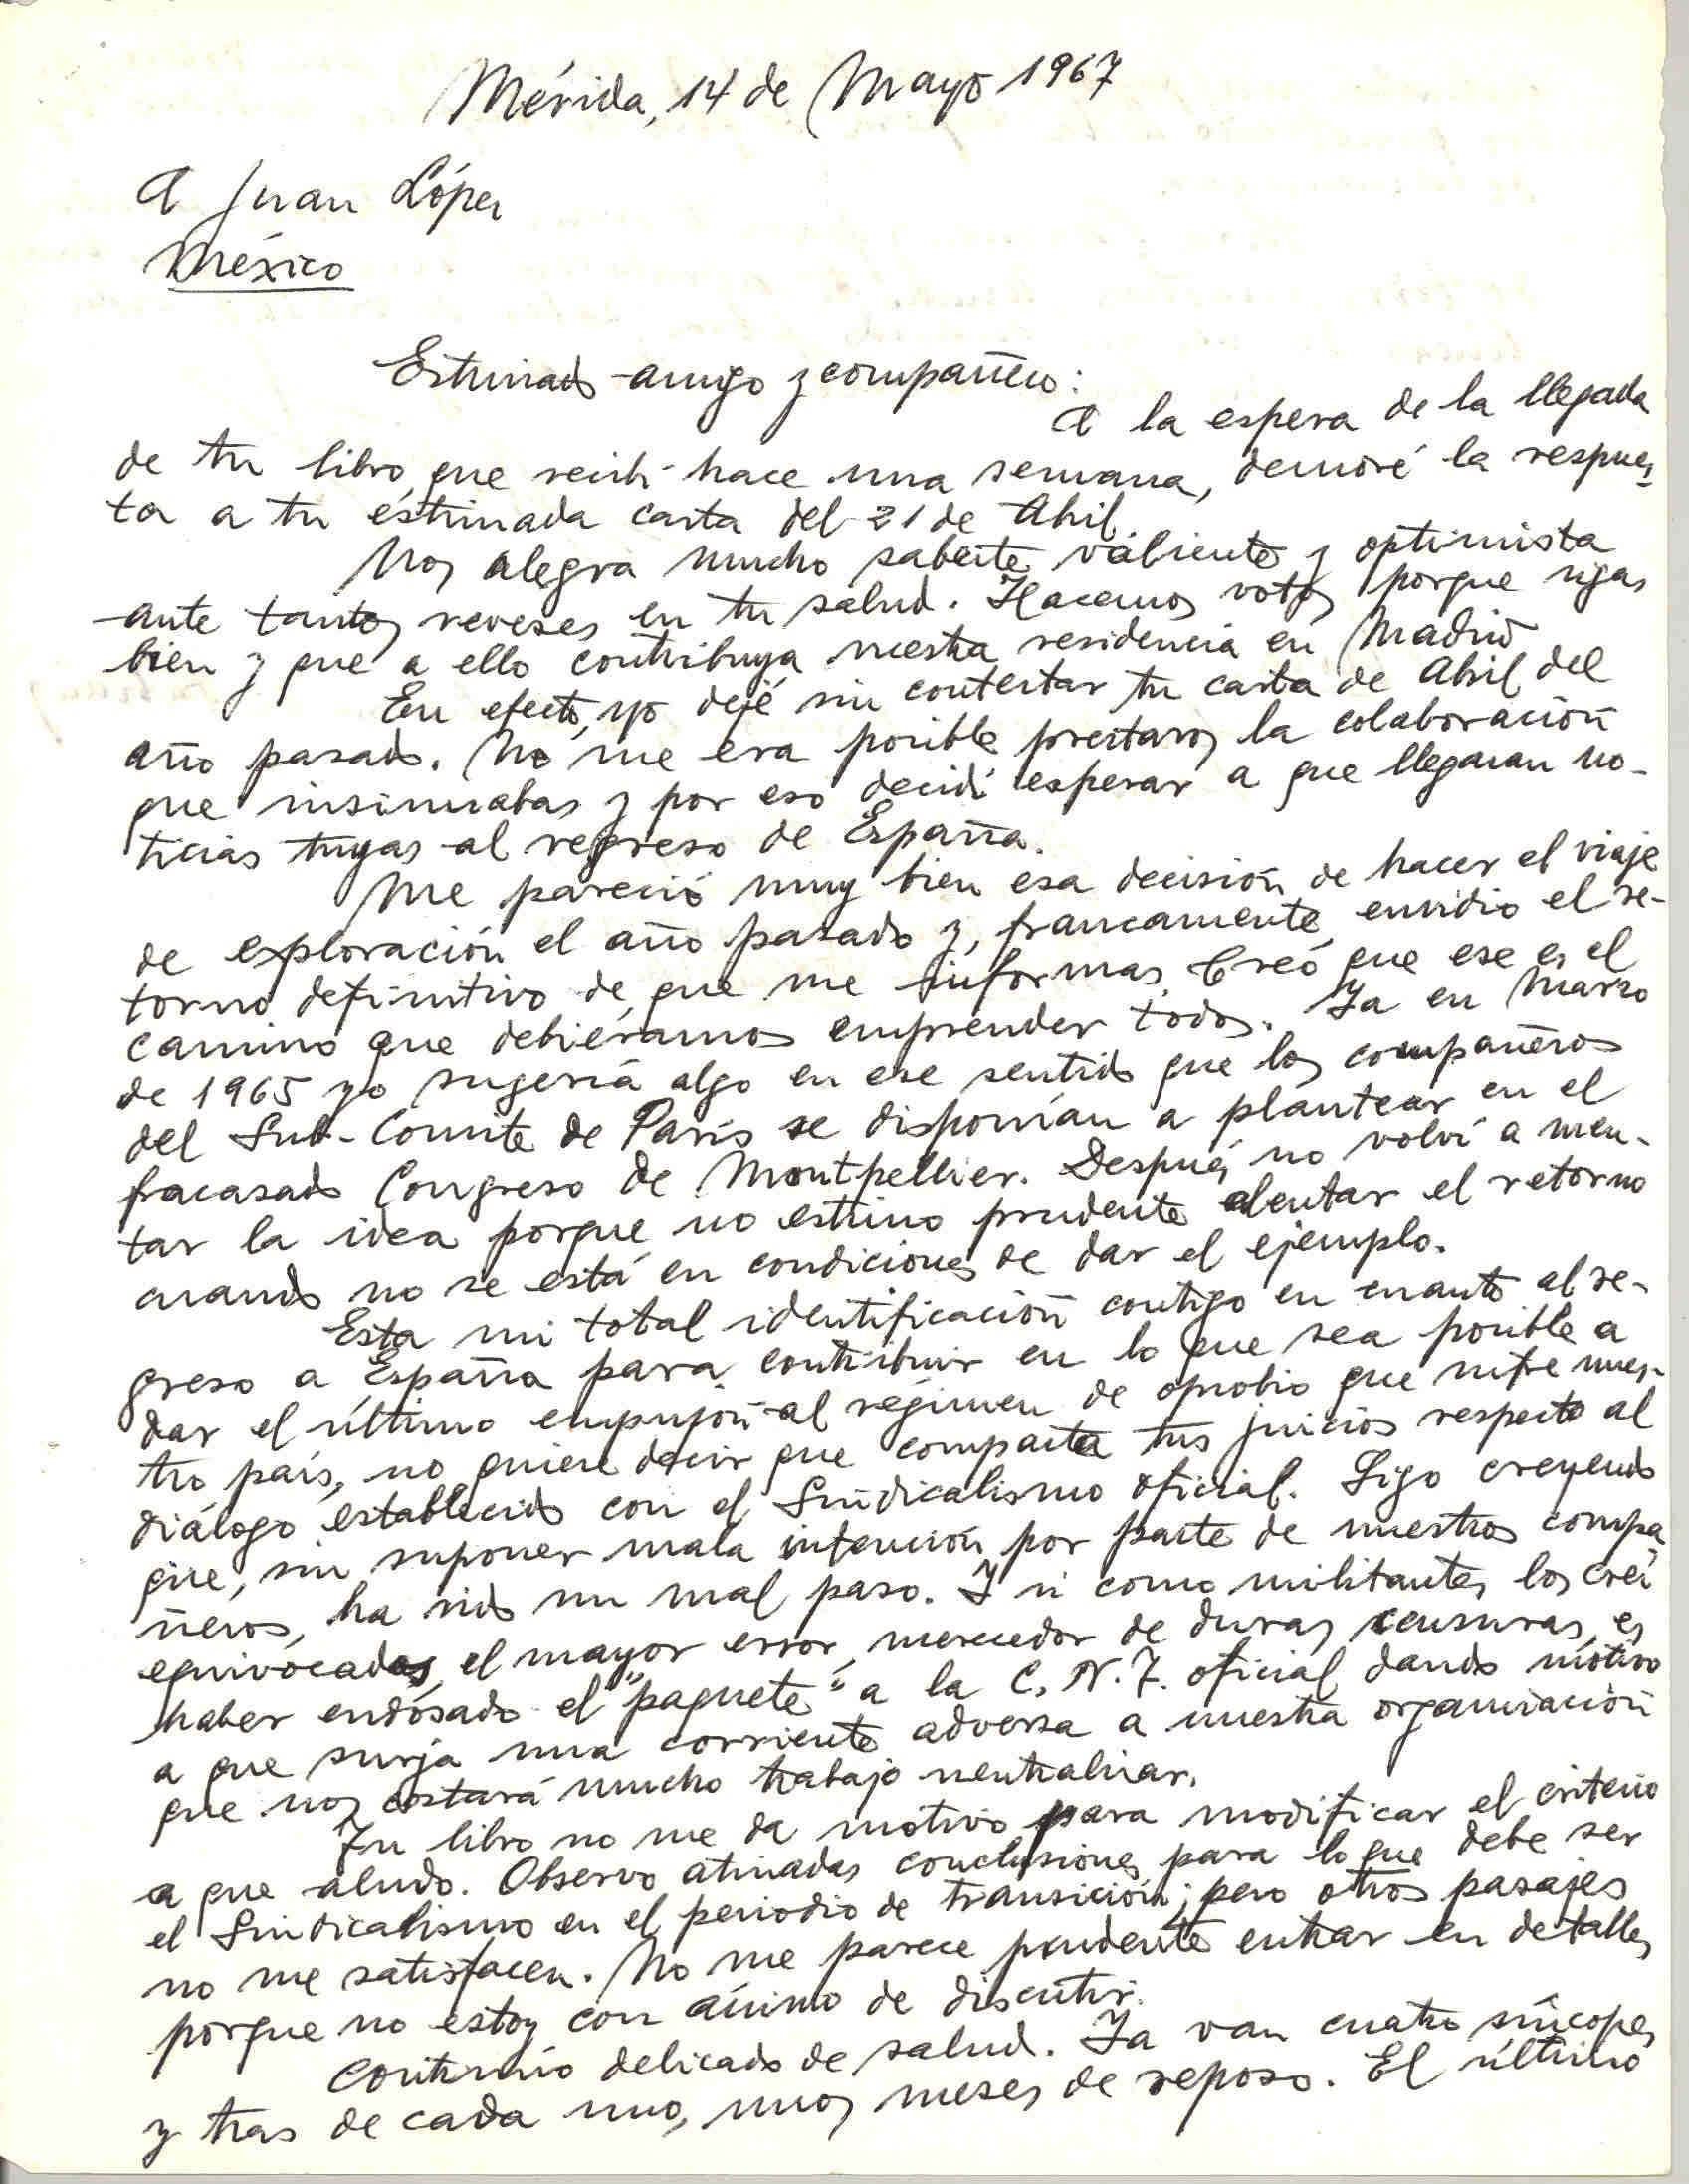 Carta de Avelino González Entrialgo hablando sobre el libro enviado por Juan López, los viajes de regreso a España y el Sindicalismo en el periodo de la transición.